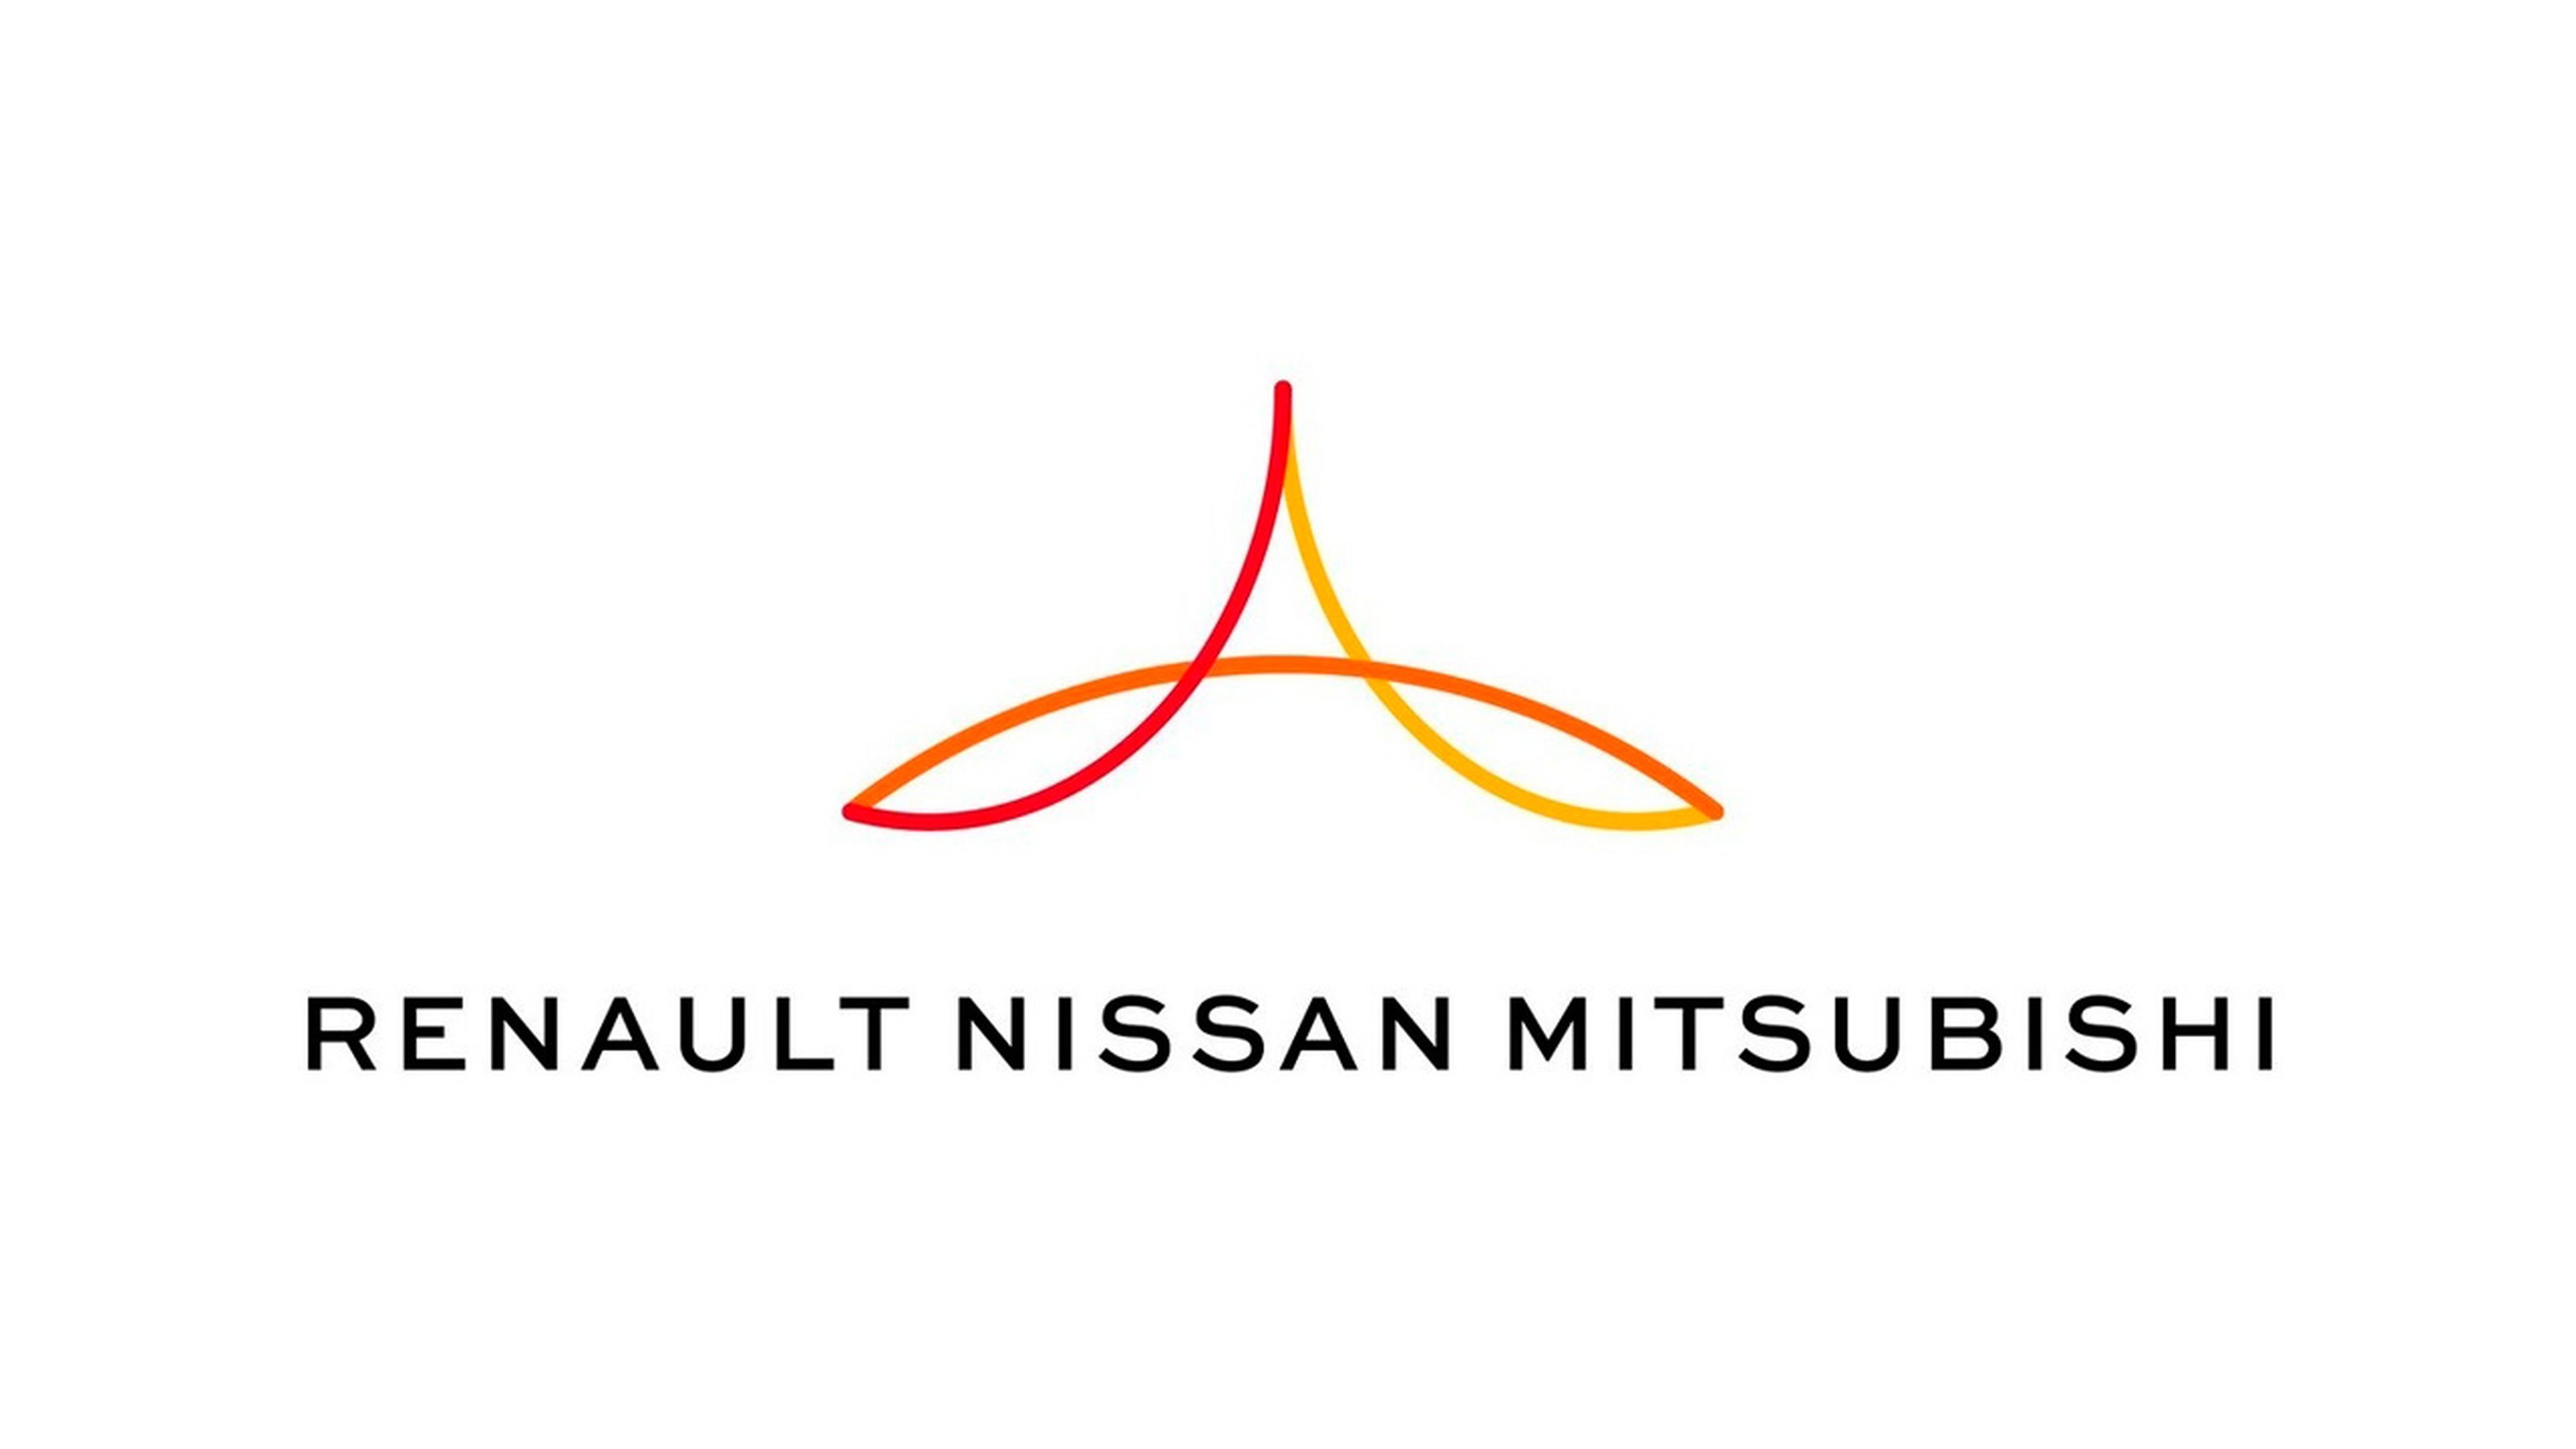 Alianza Renault Nissan Mitsubishi